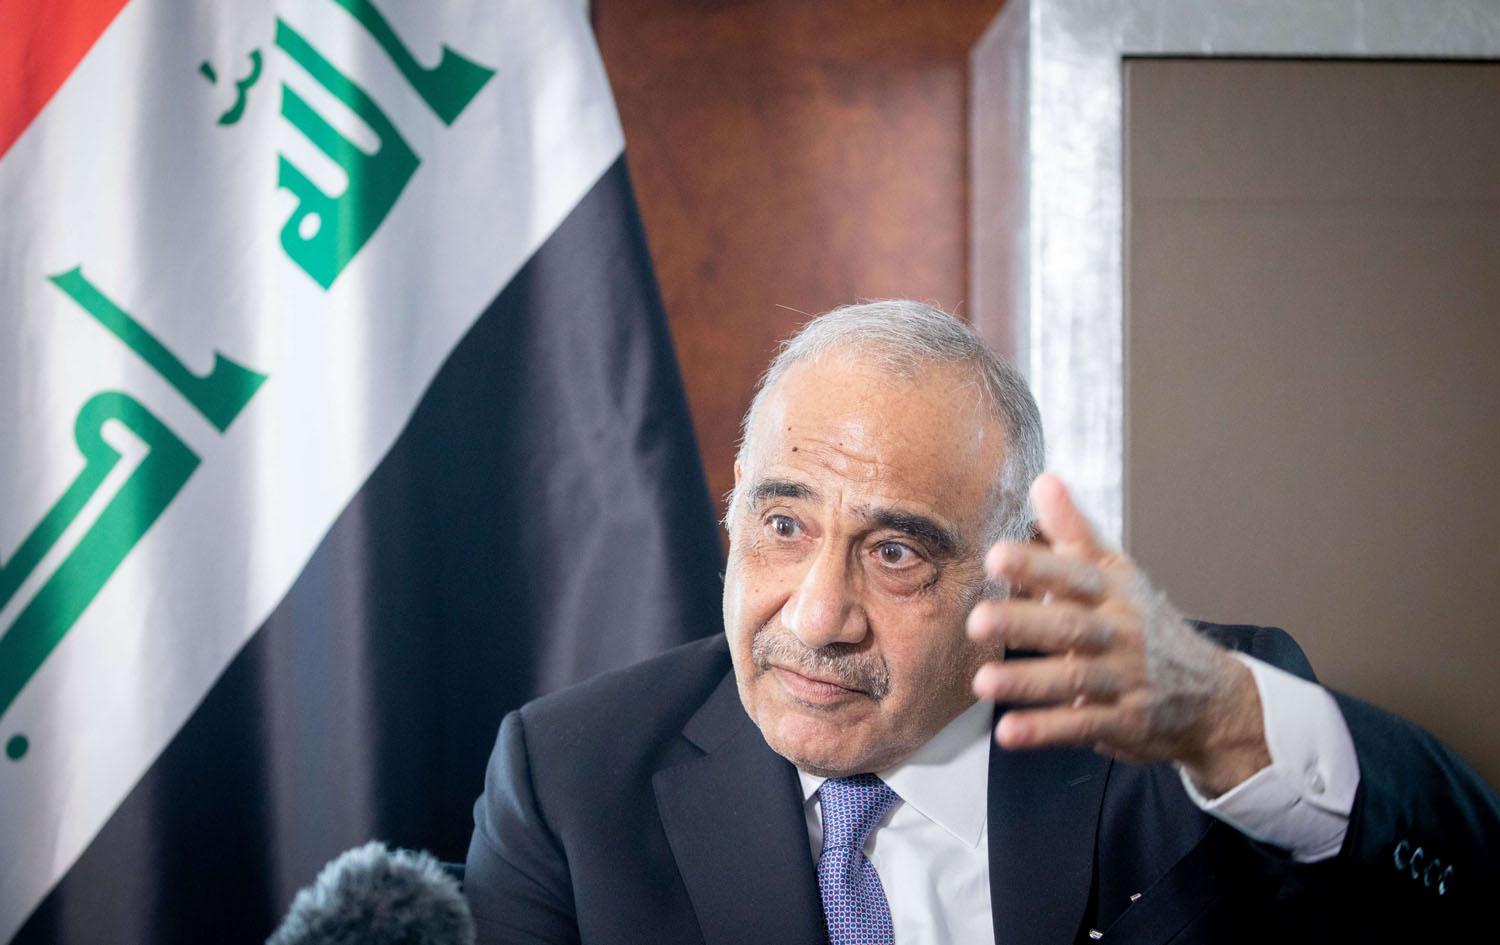 استقالة عبدالمهدي تنبئ بفترة غموض سياسي في العراق